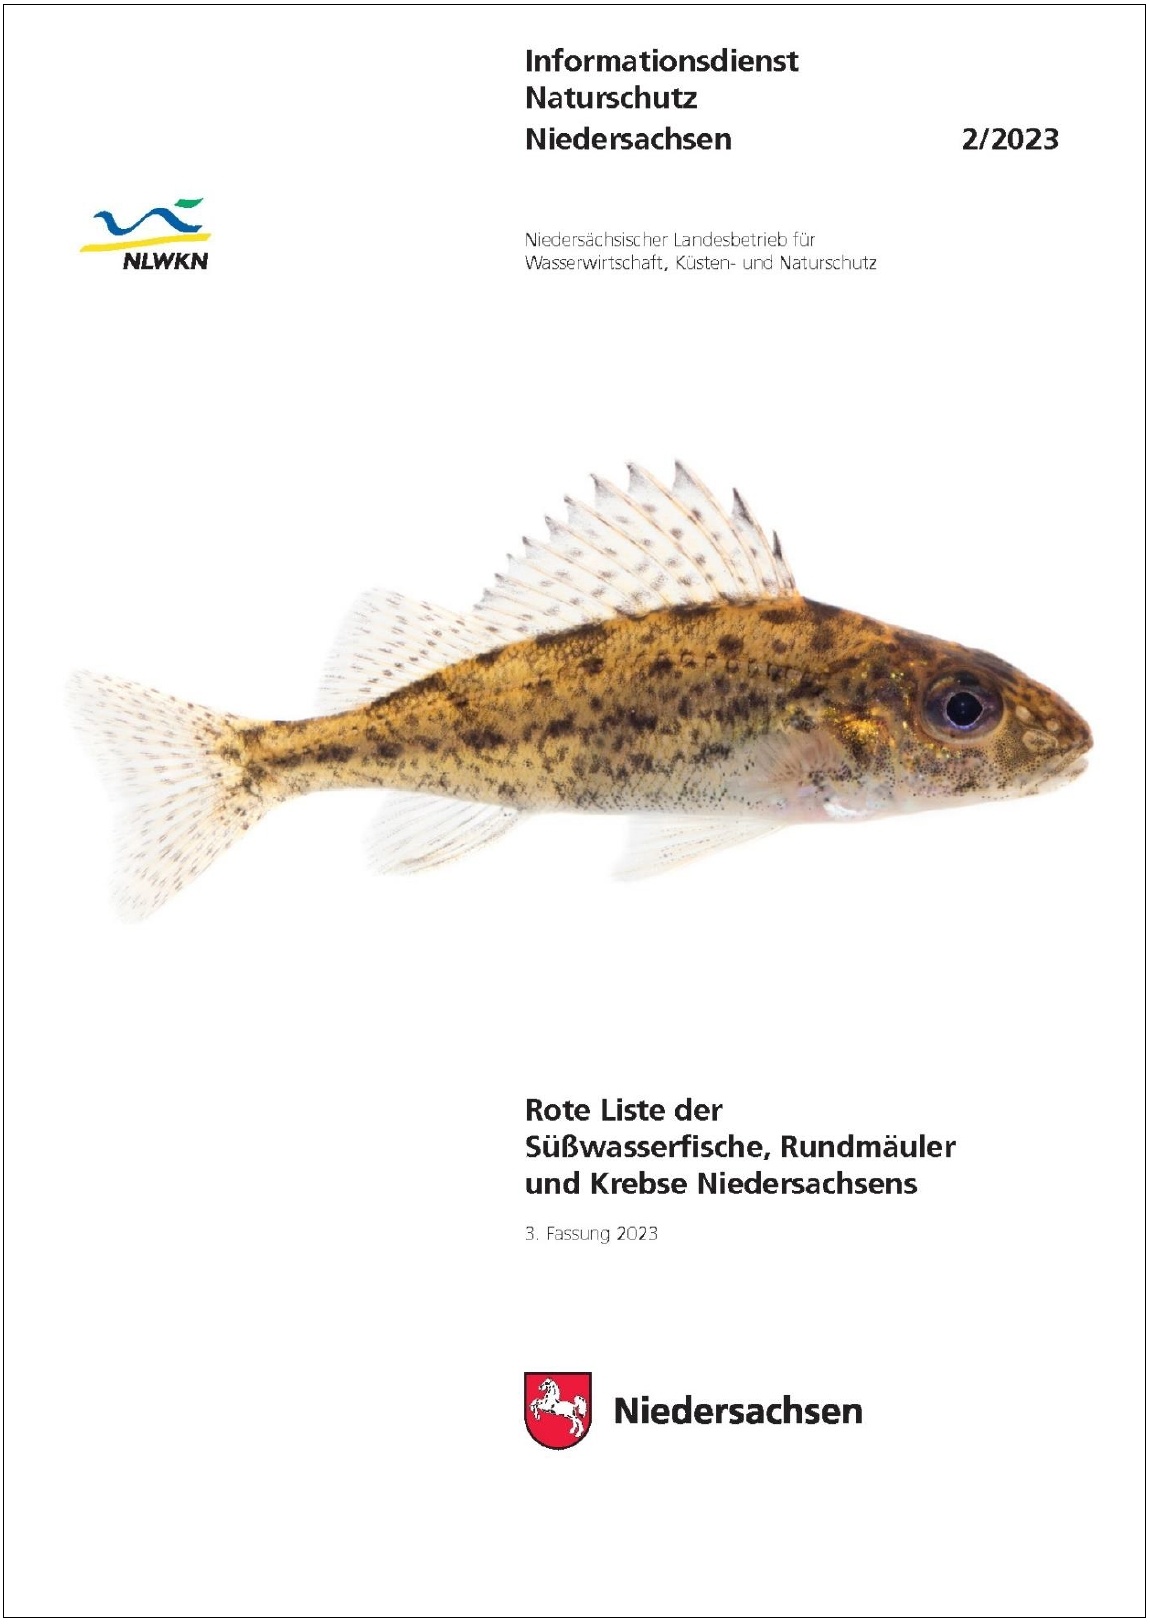 Rote Liste der Süßwasserfische, Rundmäuler und Krebse Niedersachsens (2/23)